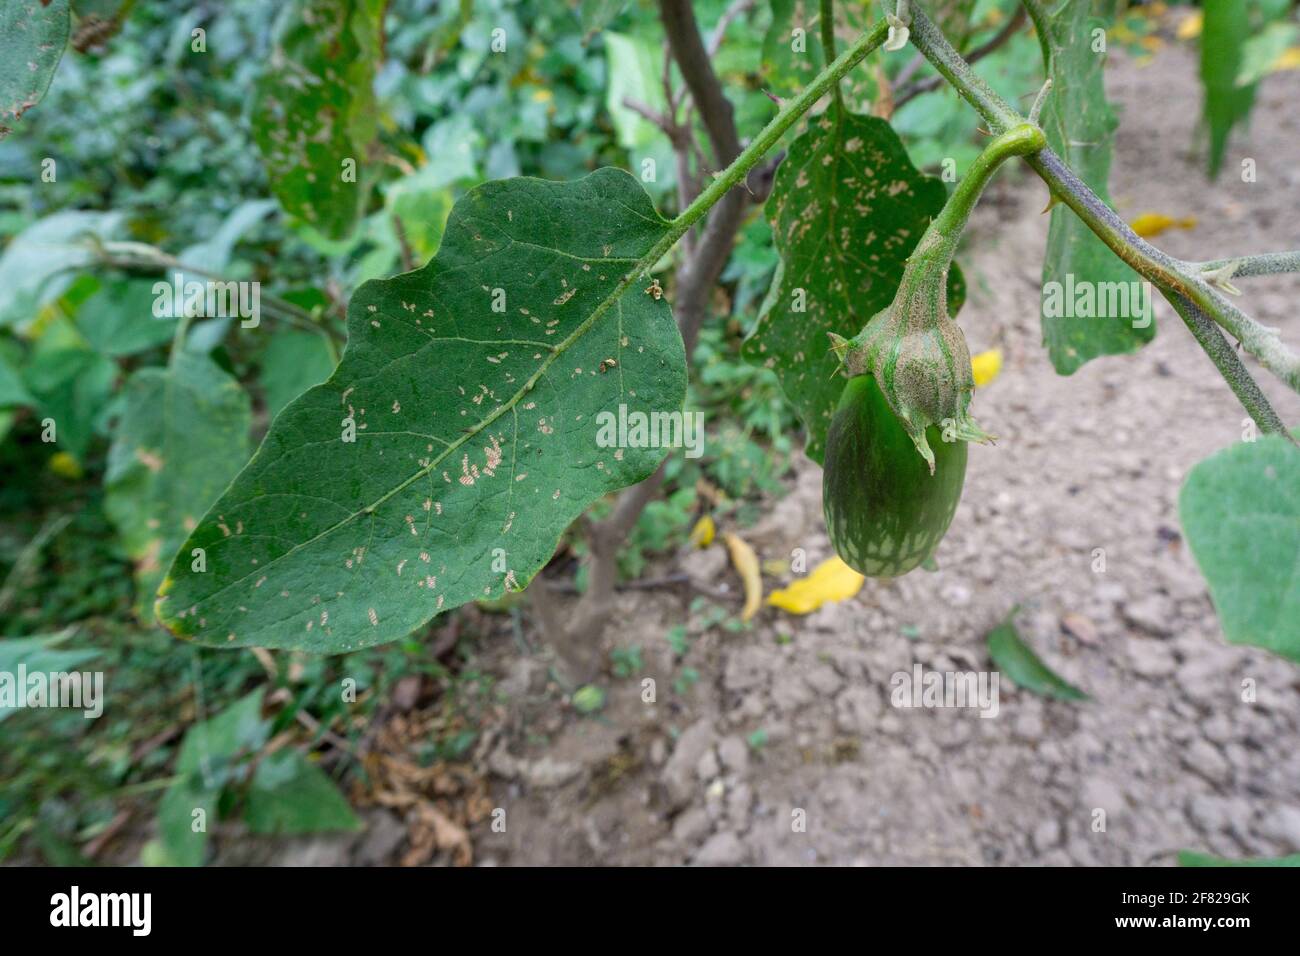 Eine Nahaufnahme von selbst angebautem Brinjal, das allgemein als Aubergine bekannt ist. Aubergine ist eine Pflanzenart in der Familie der Nachtschattengewächse Solanaceae. Solanum m Stockfoto